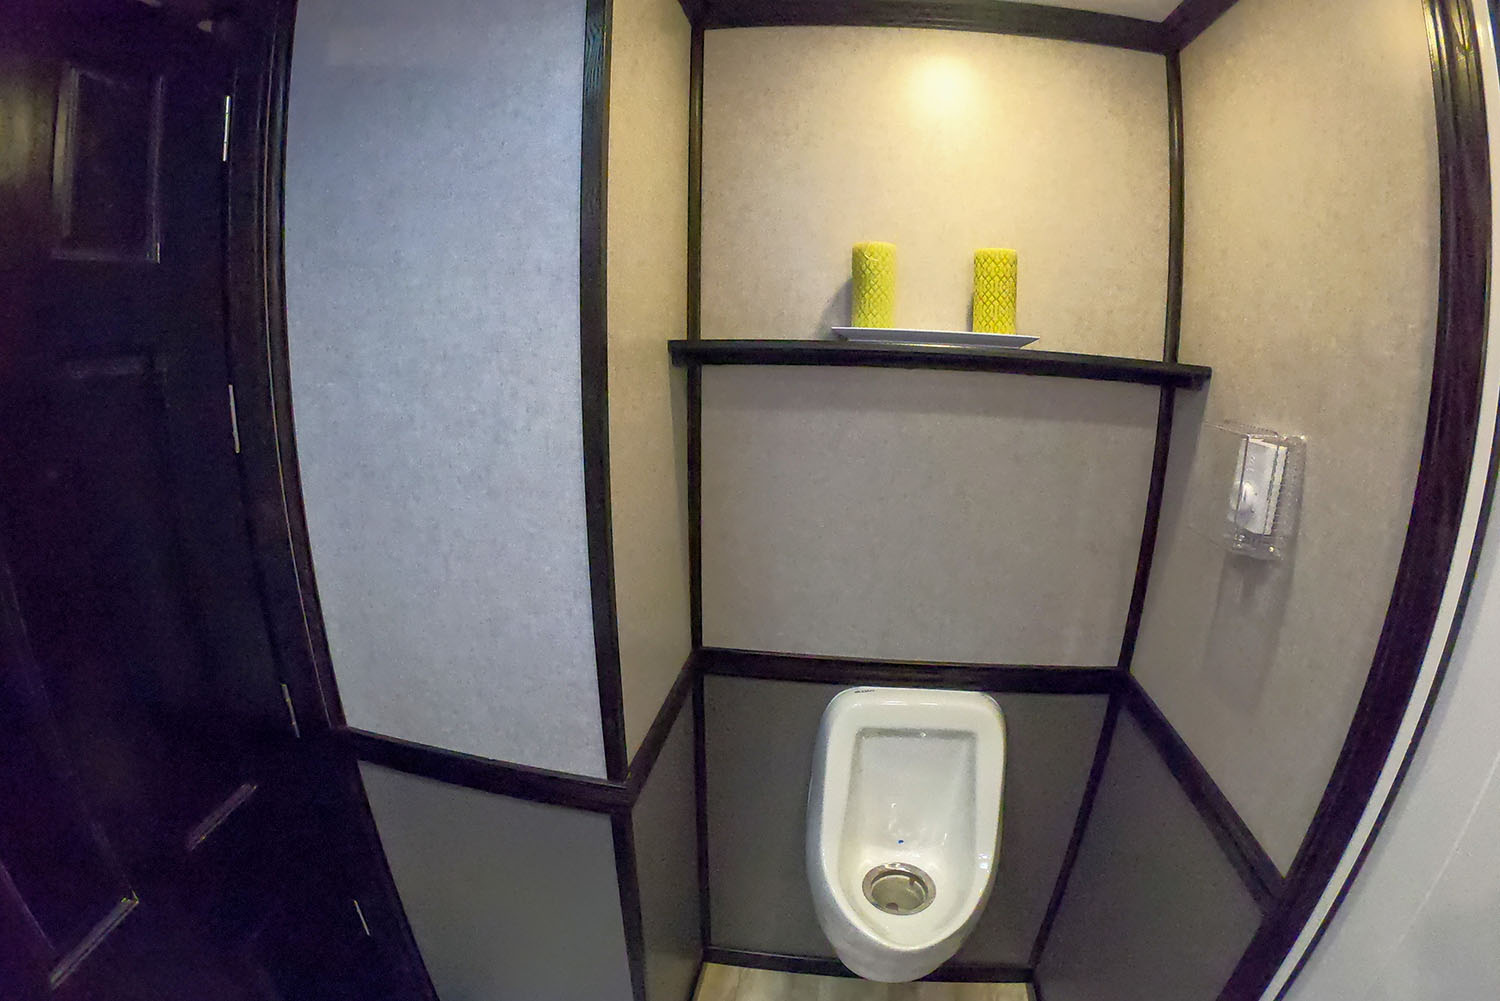 Luxury restroom trailer rental men's urinal montana